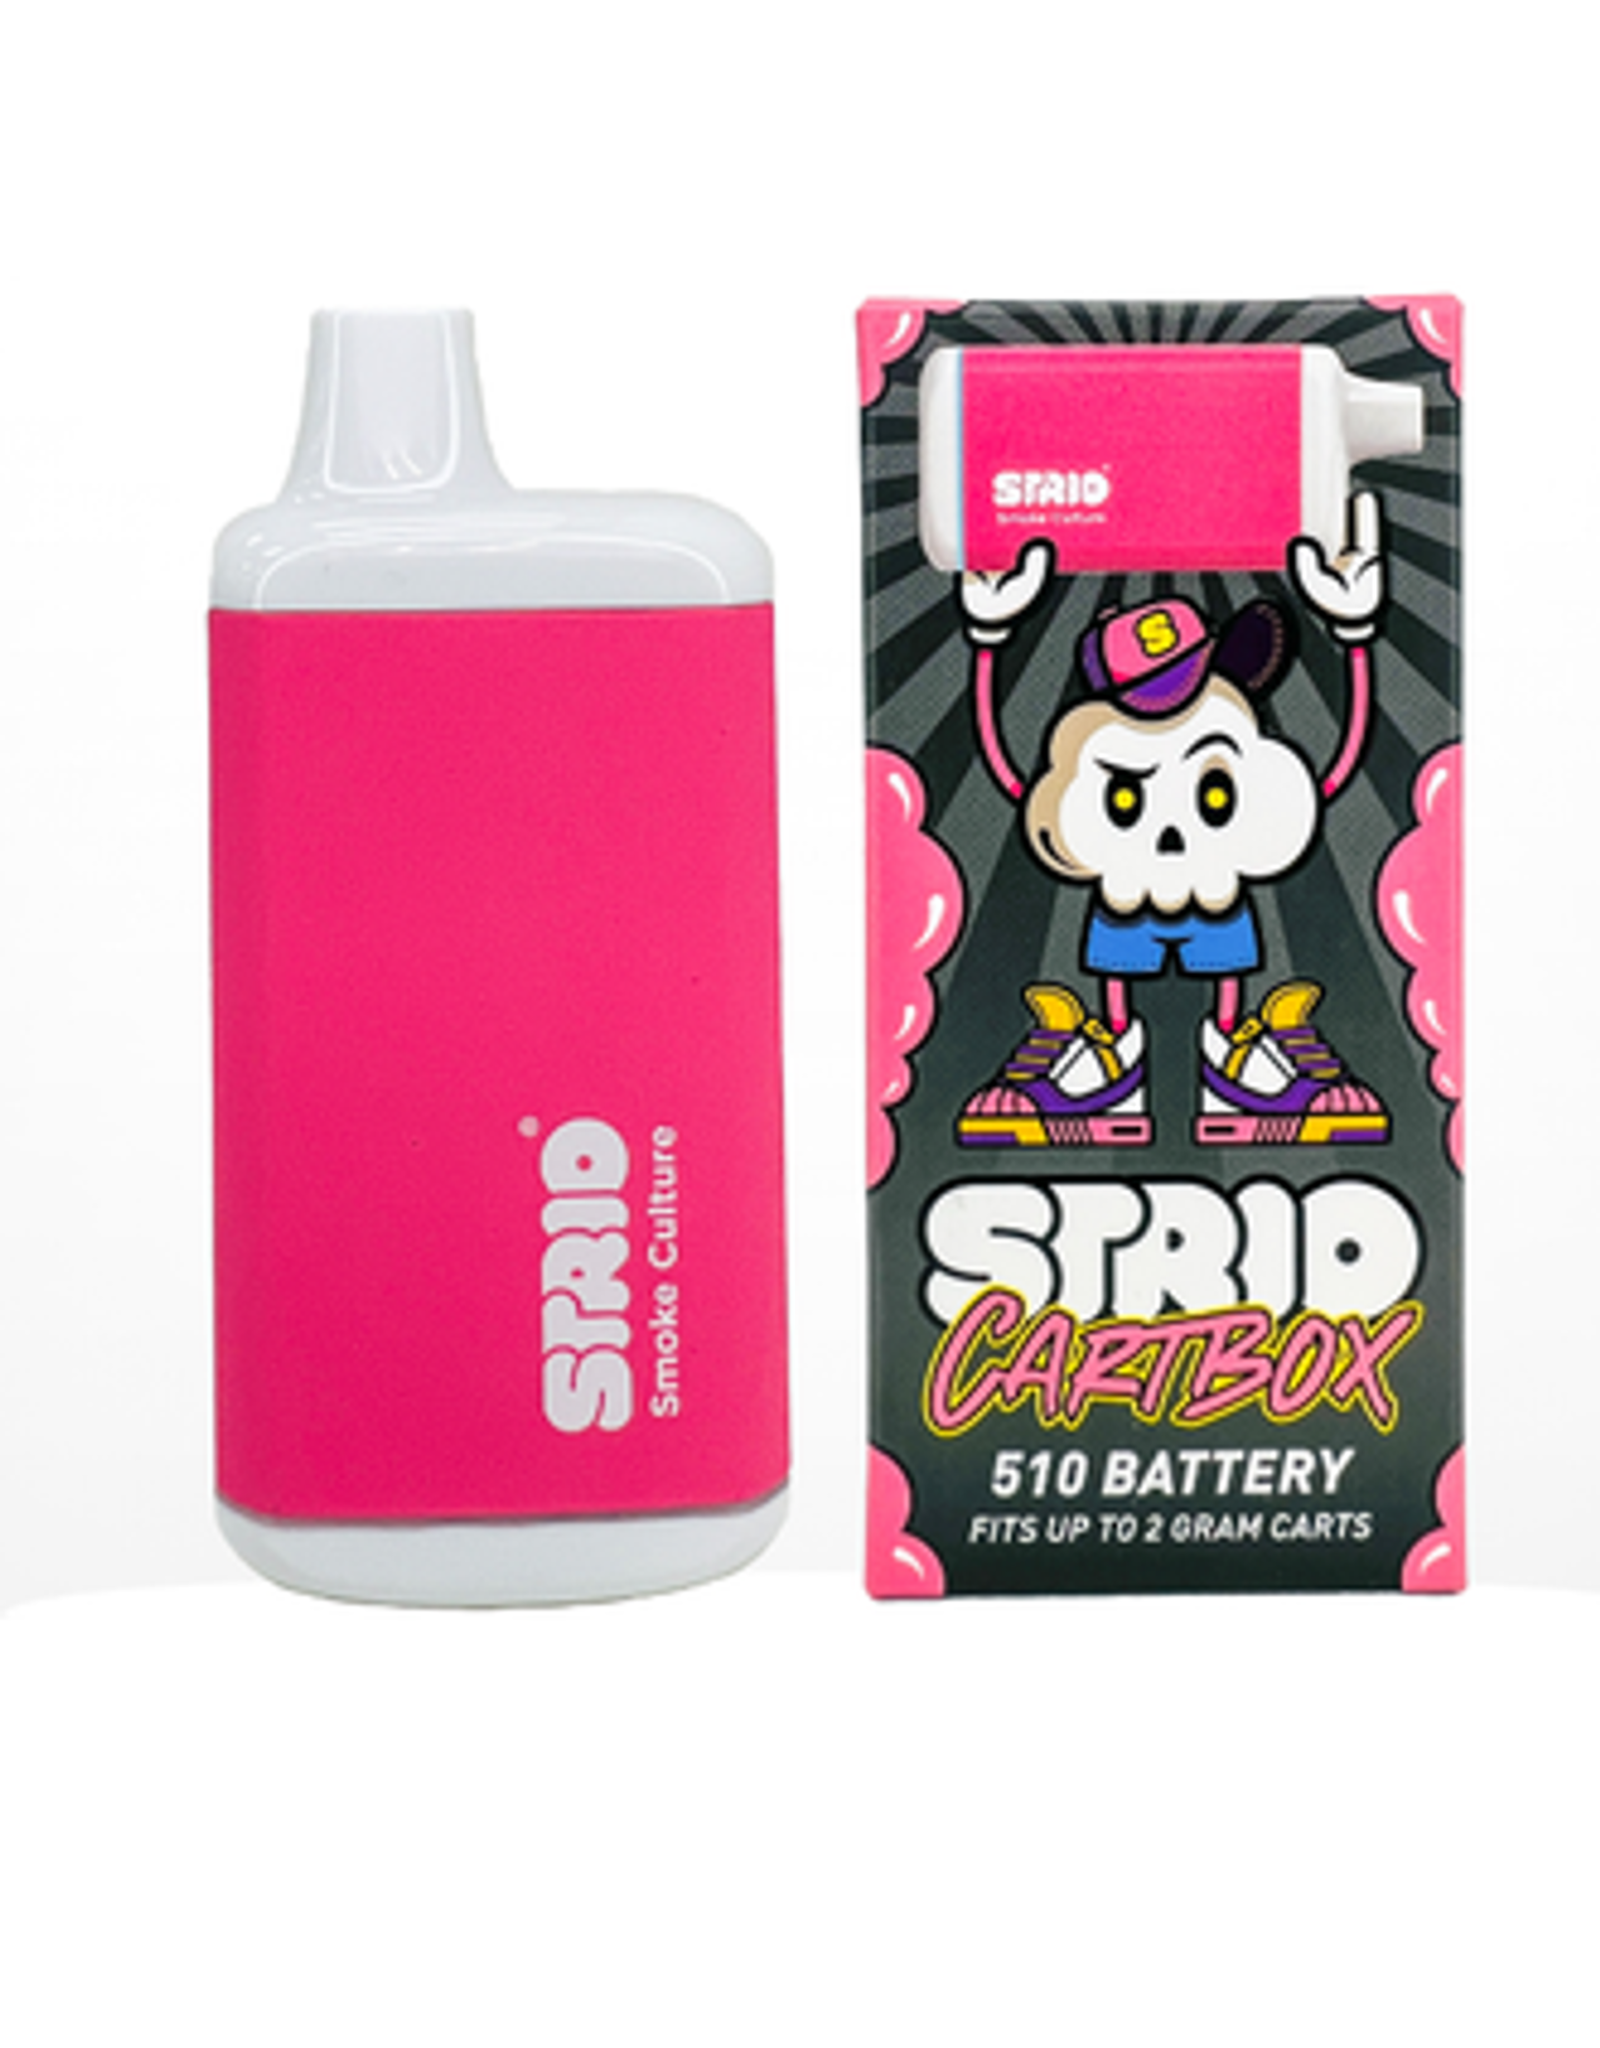 STRIO STRIO Incognito CartBox 510 Battery - Pink Box